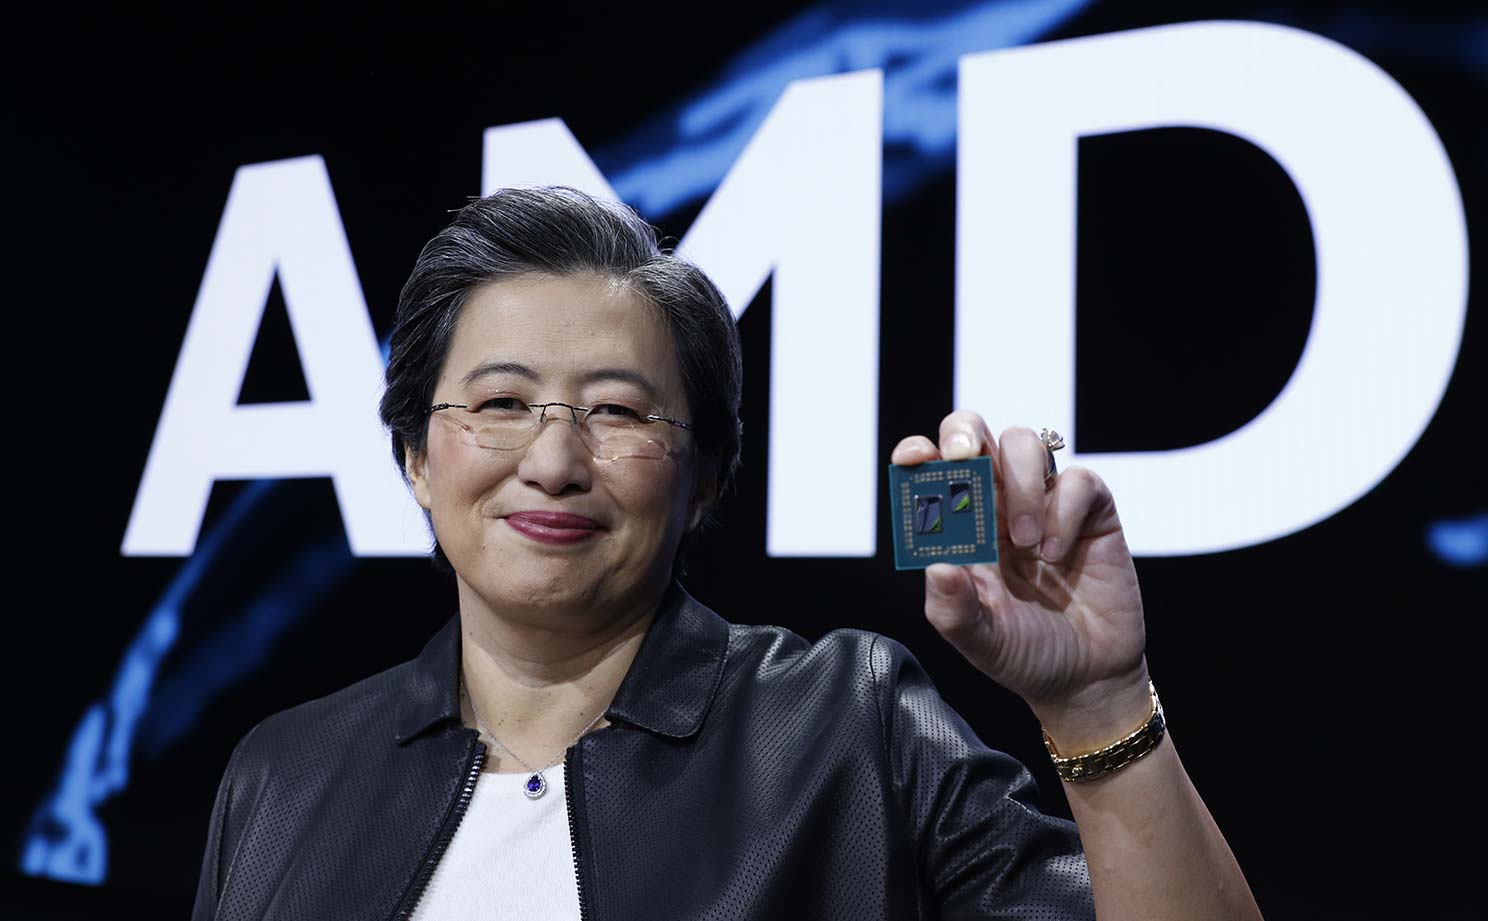 AMD tiếp tục chiếm lĩnh thị phần CPU máy chủ, desktop và notebooks trong Q4/2018, cao nhất từ 2014